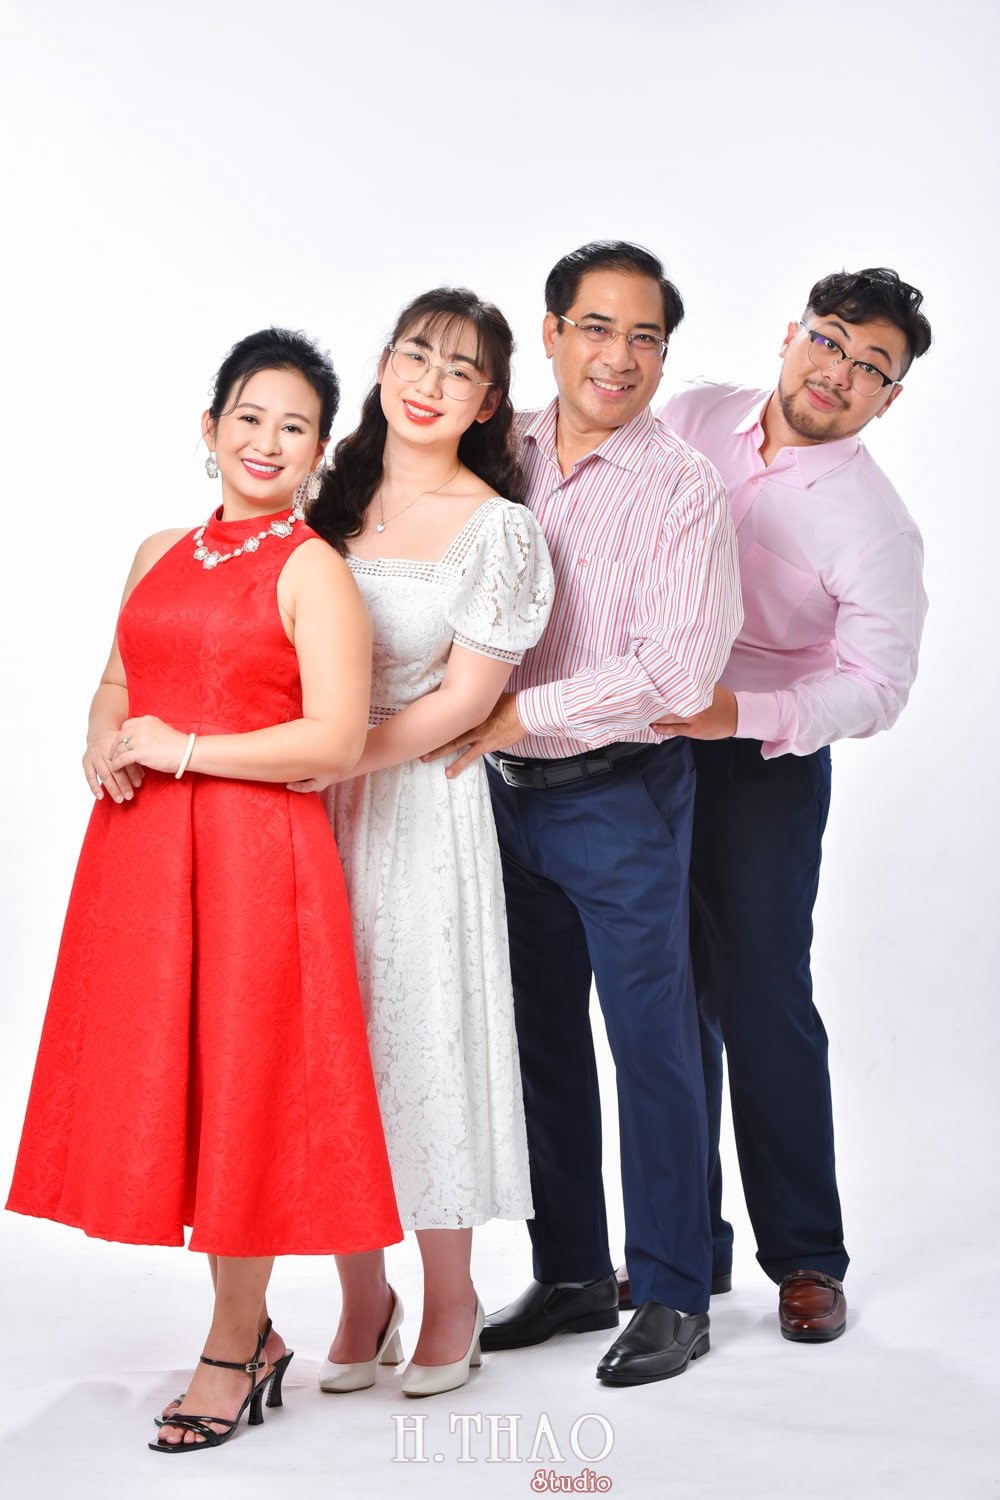 Anh gia dinh 4 nguoi 17 min - Dịch vụ chụp ảnh gia đình ngày tết giá rẻ tại Tp.HCM - HThao Studio